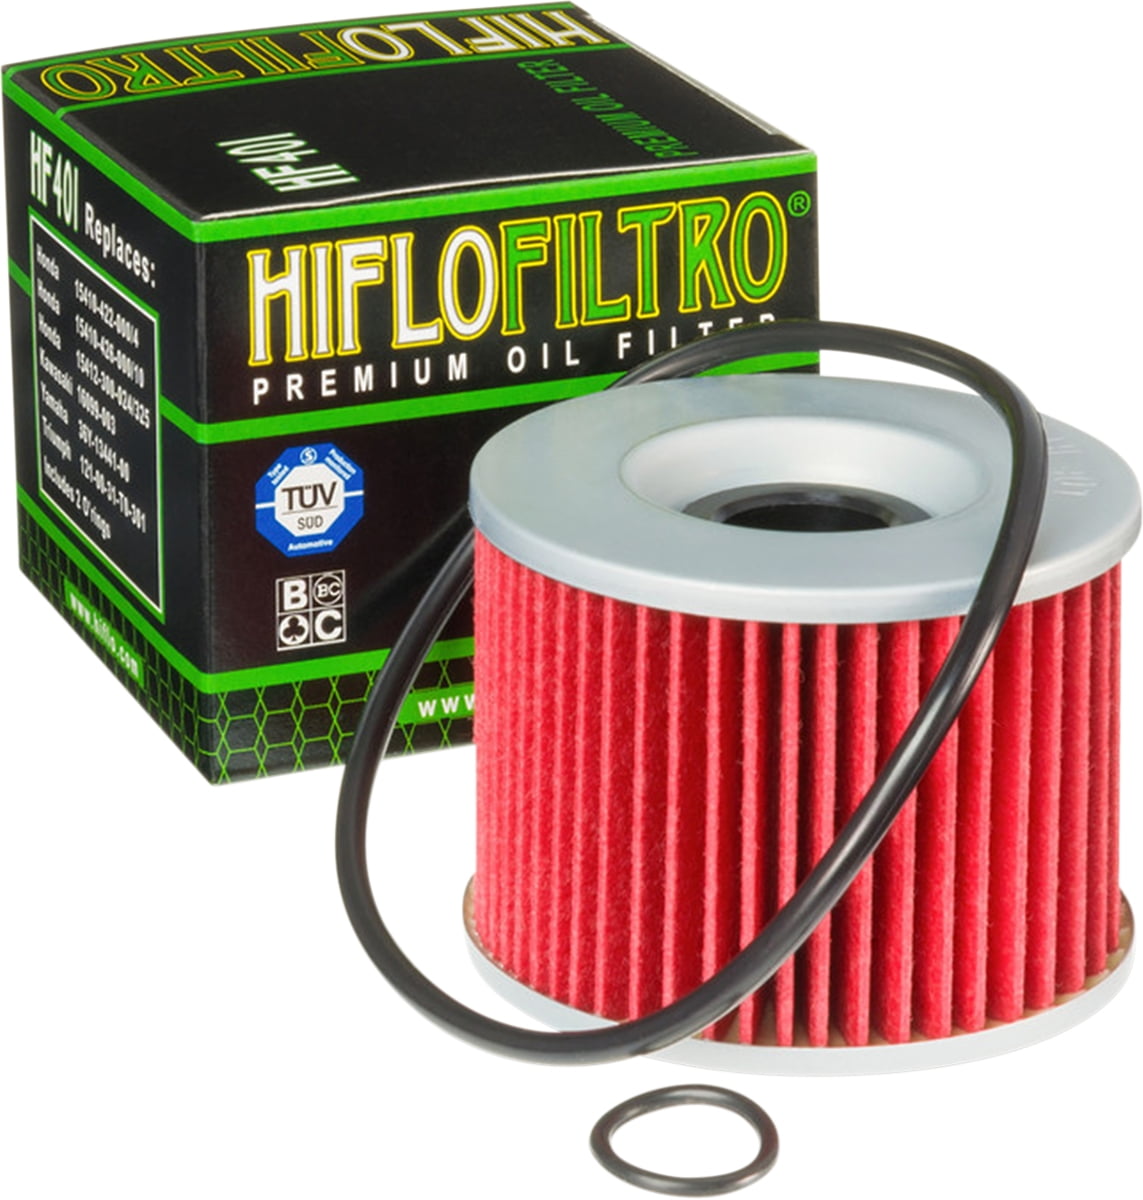 Hiflofiltro 3 Pack HF401-3 Premium Oil Filter 3 Pack Pack of 3 